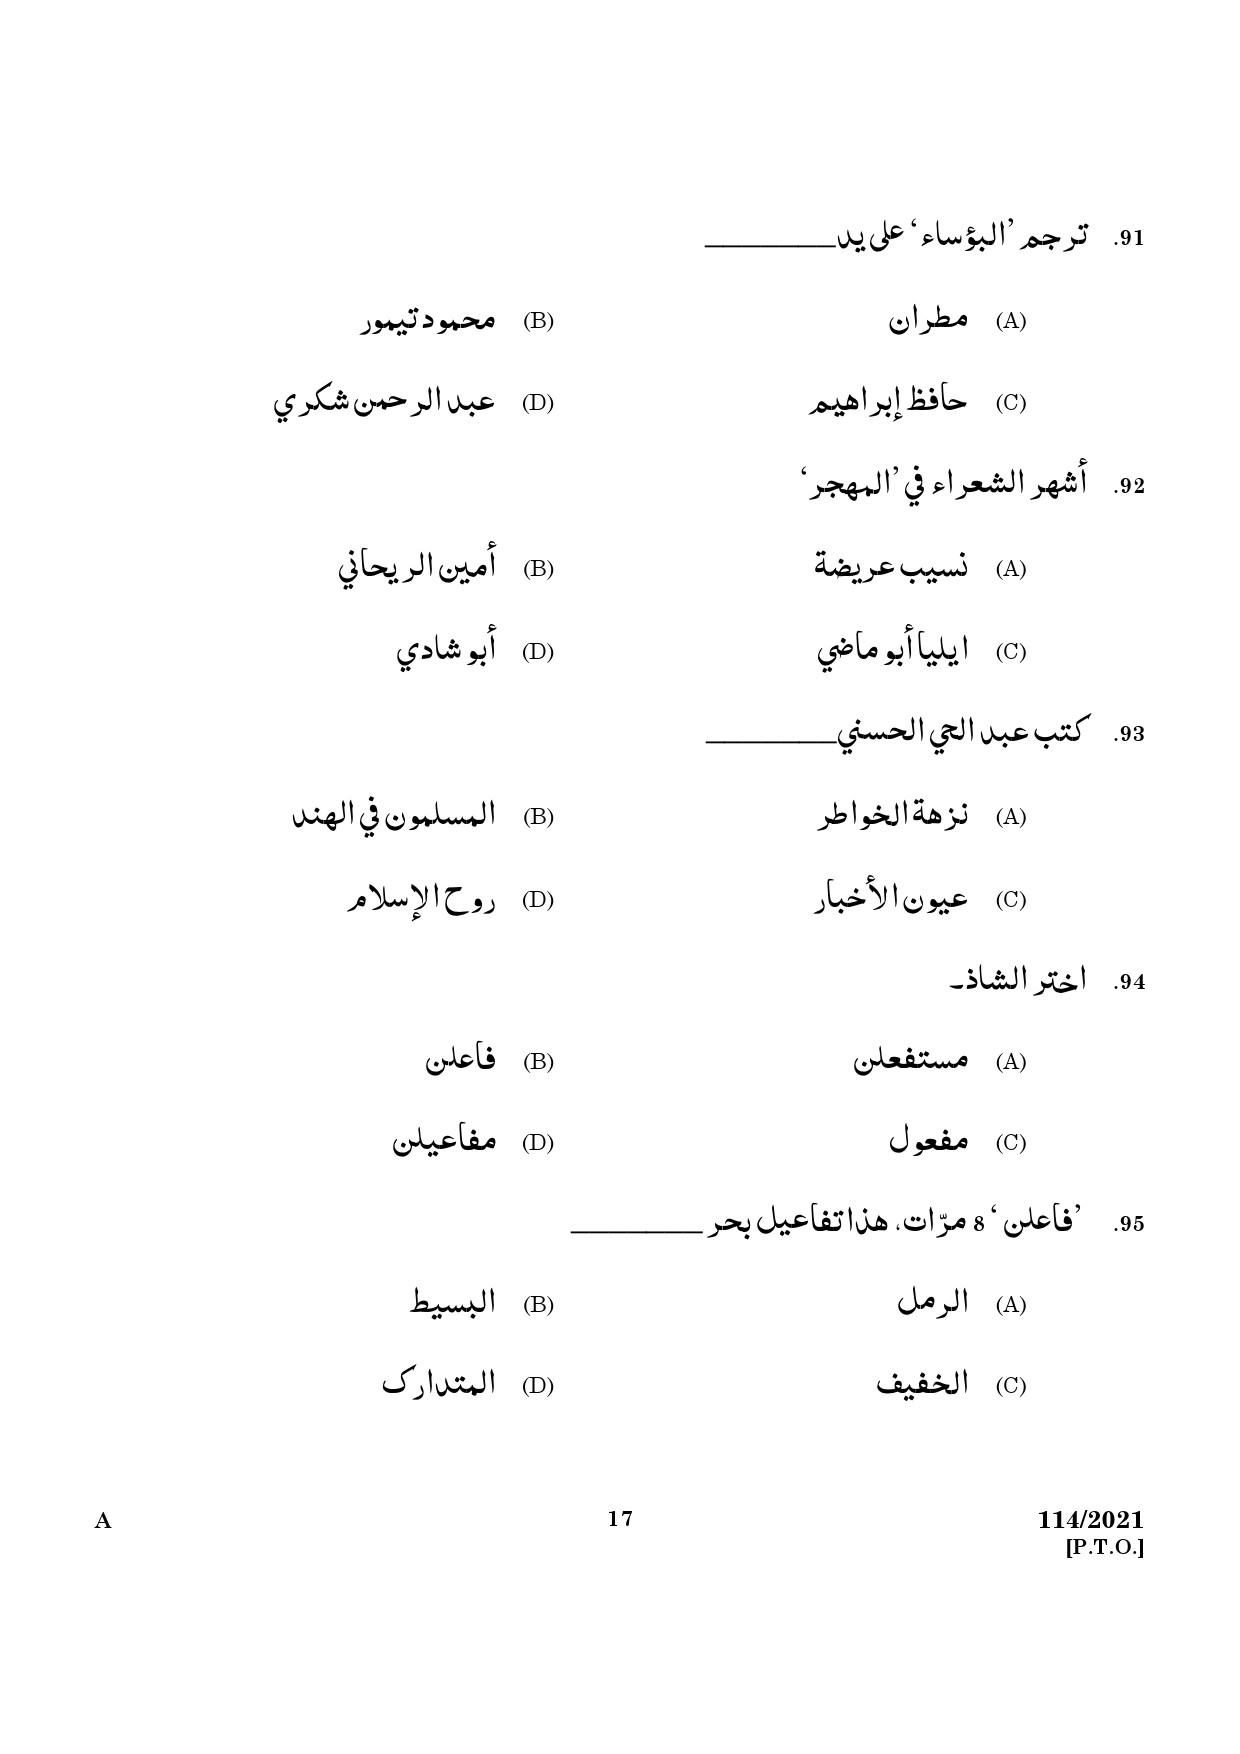 KPSC Full Time Junior Language Teacher Arabic Exam 2021 Code 1142021 15